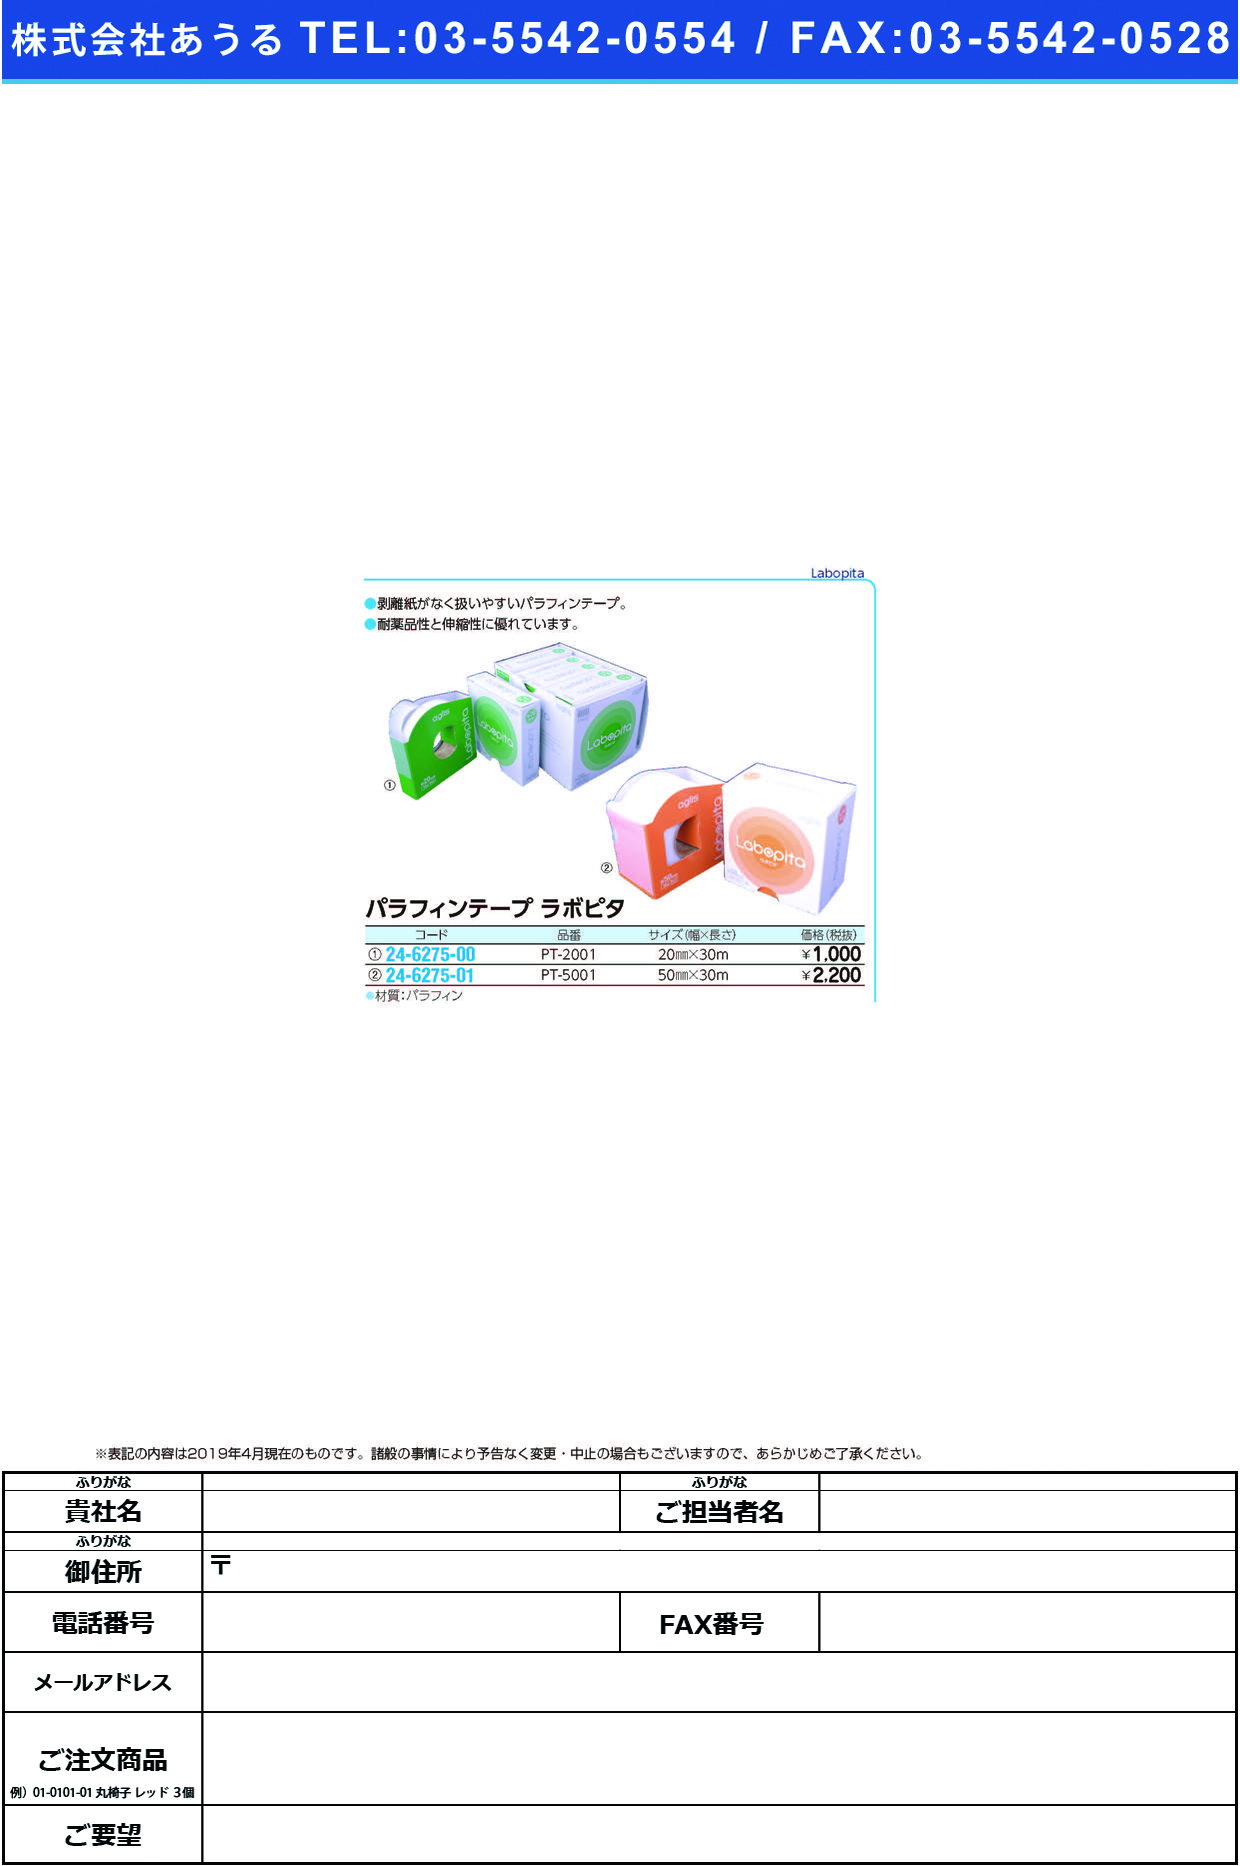 (24-6275-01)パラフィンテープラボピタ PT-5001(50MMX30M) ﾊﾟﾗﾌｨﾝﾃｰﾌﾟﾗﾎﾞﾋﾟﾀ【1巻単位】【2019年カタログ商品】